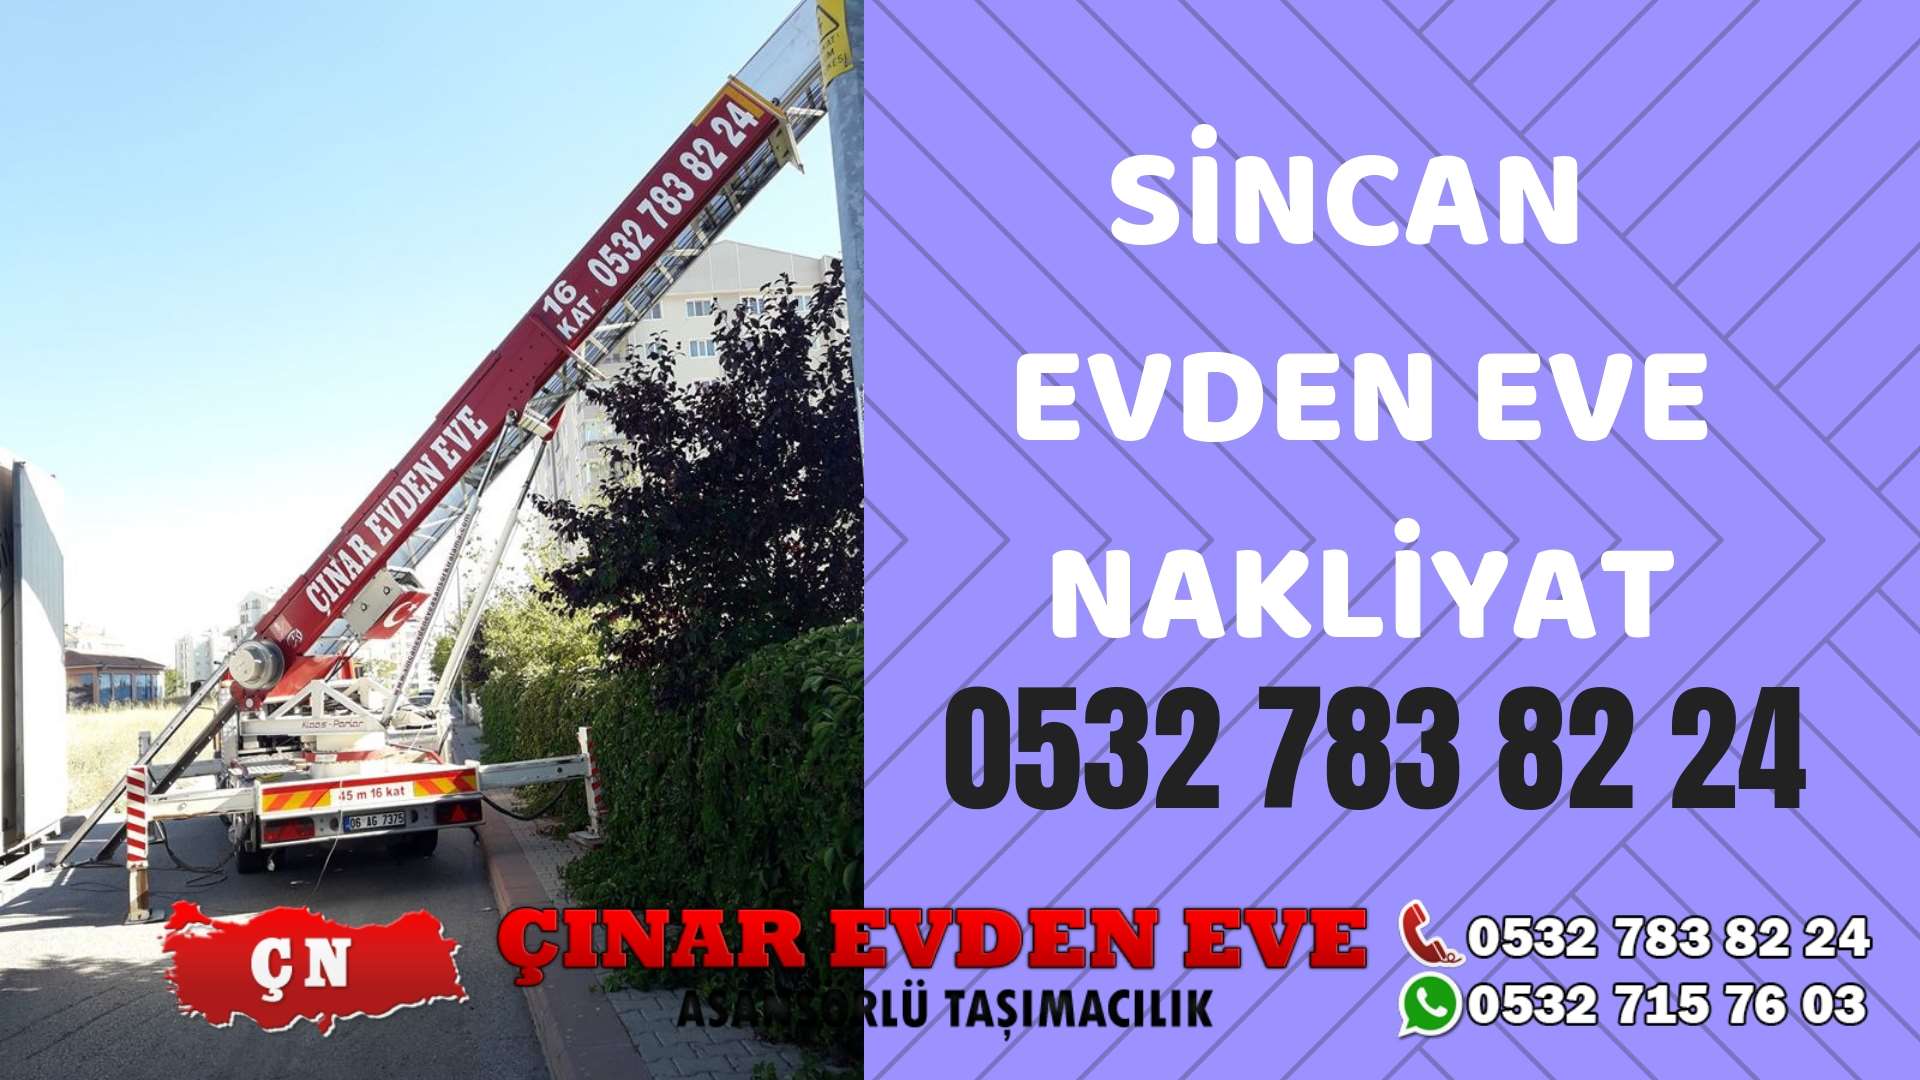 Ankara Yenikent Sincan evden eve asansörlü nakliyat en ucuz nakliye 0532 715 76 03